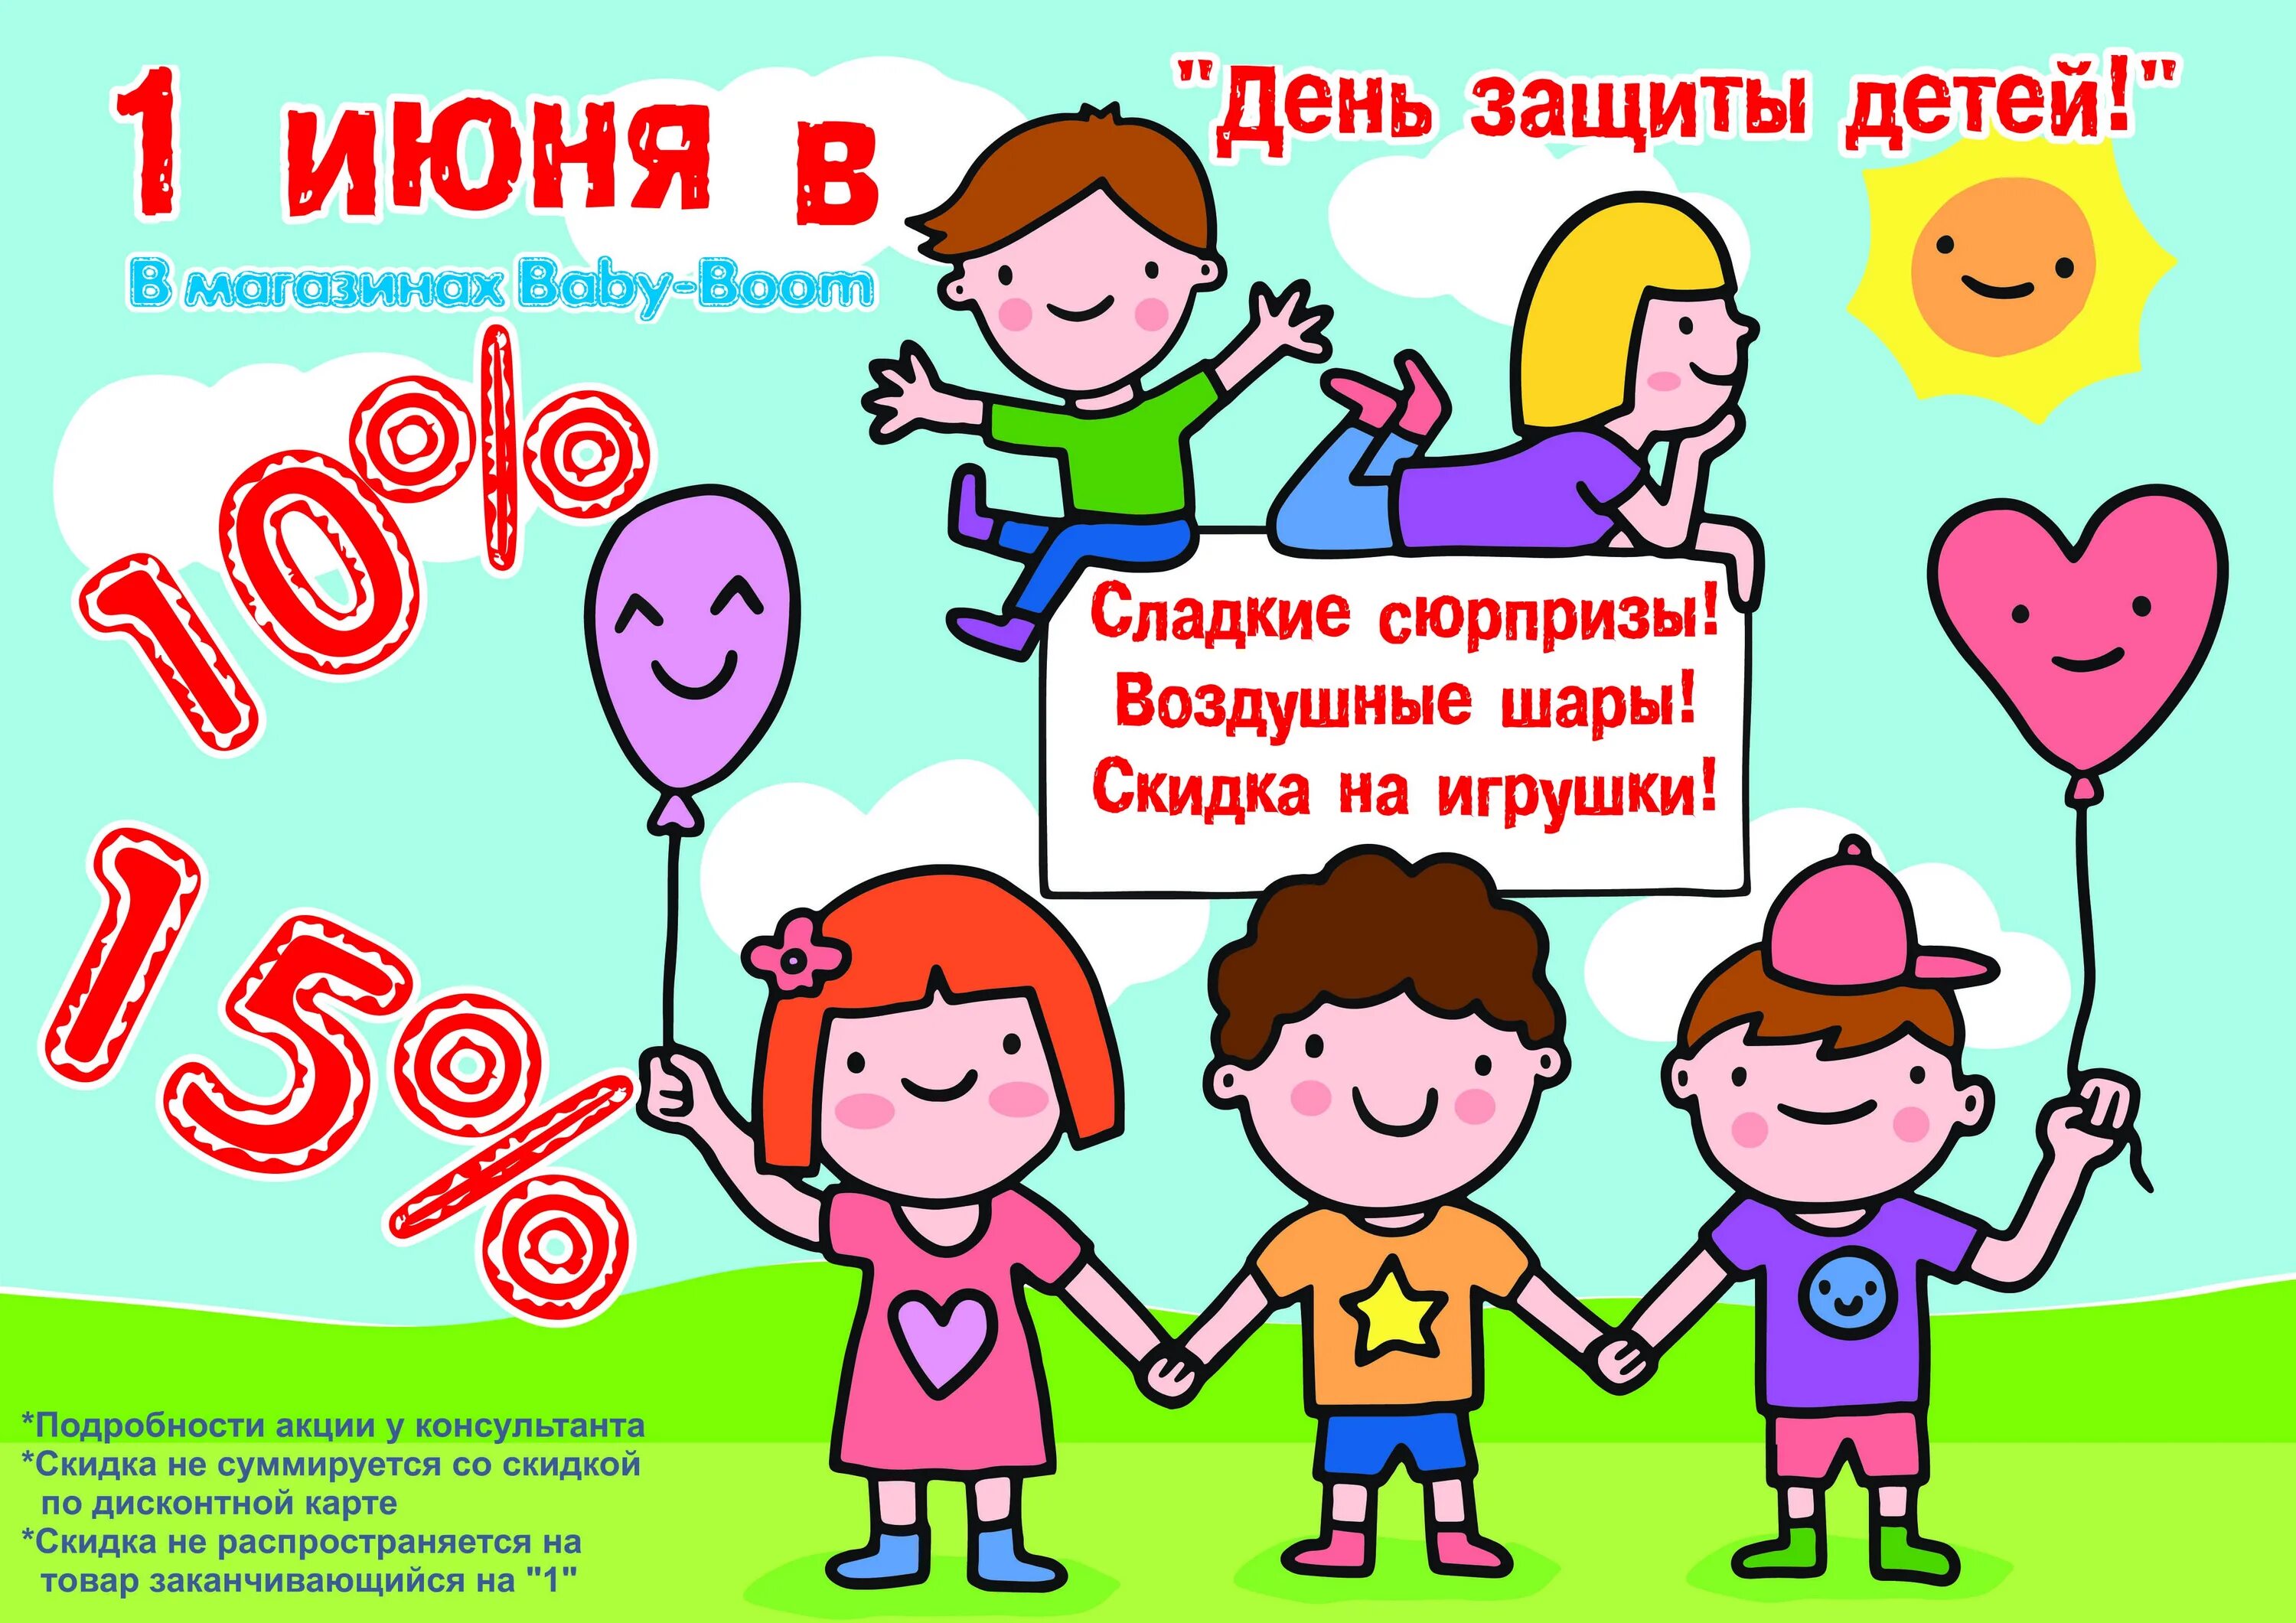 1 июня дата рождения. День защиты детей скидки. Акция ко Дню защиты детей. 1 Июня день защиты детей. Акции ко Дню защиты детей в магазинах.